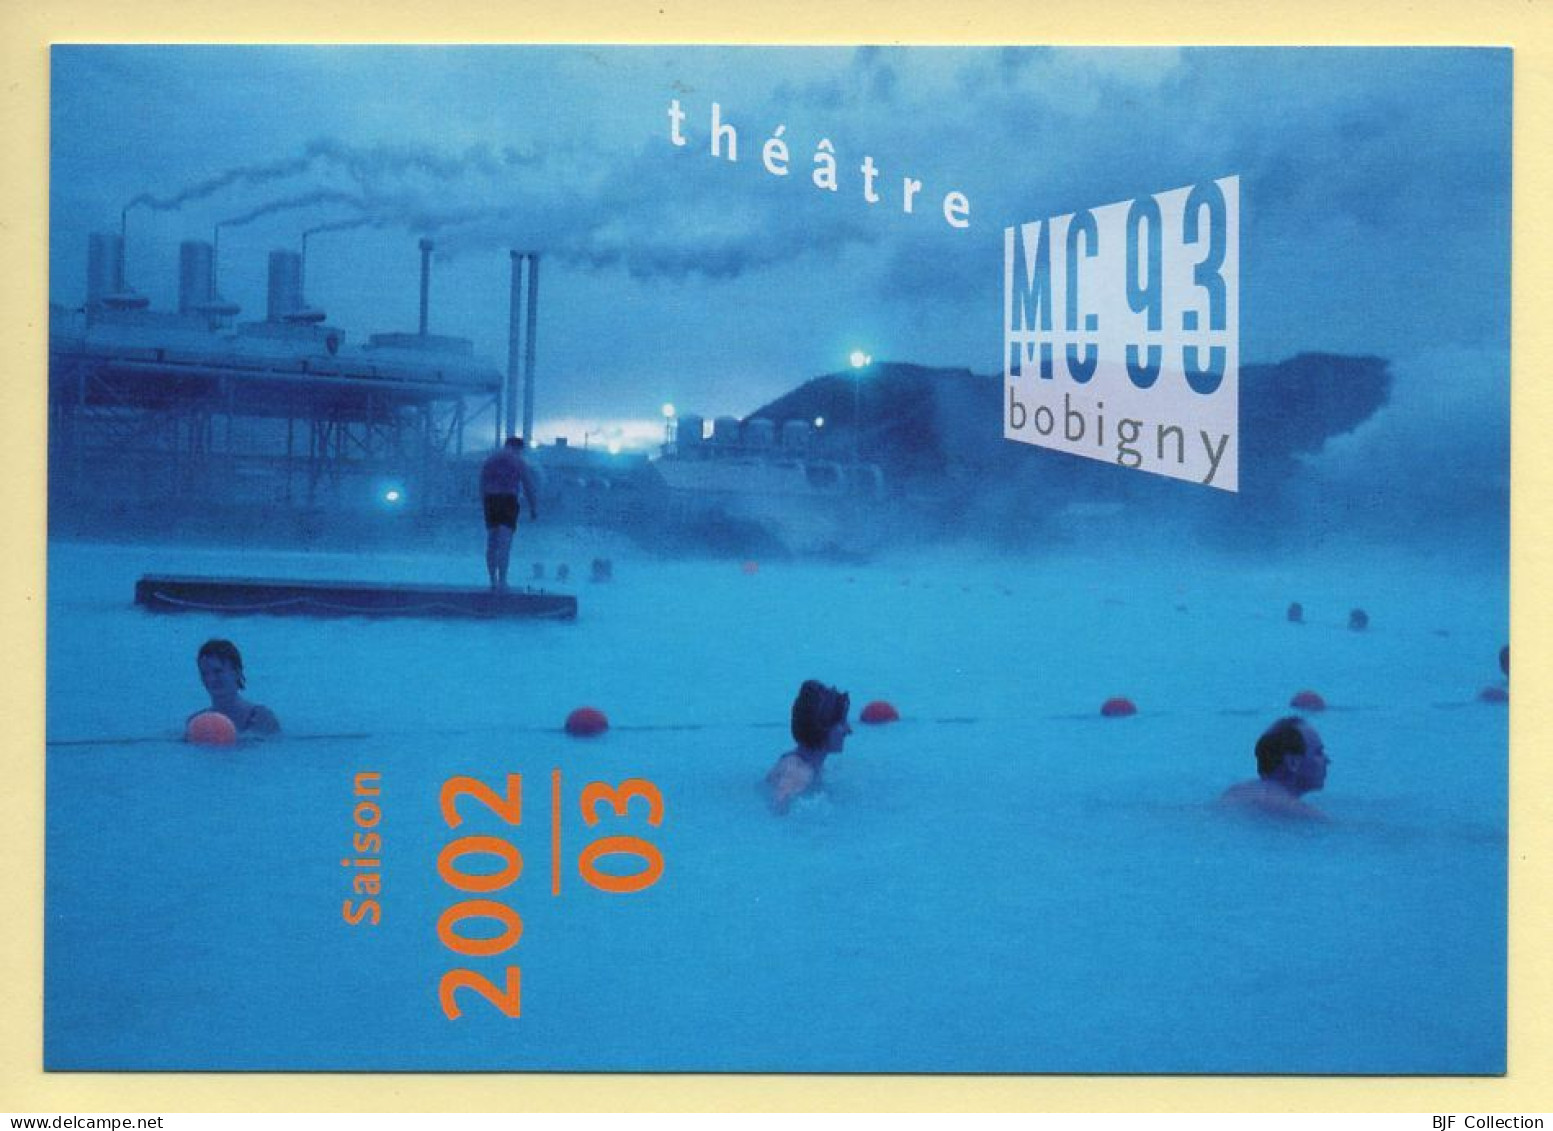 Théâtre MC93 Bobigny / Saison 2002-2003 / Théâtre - Theatre